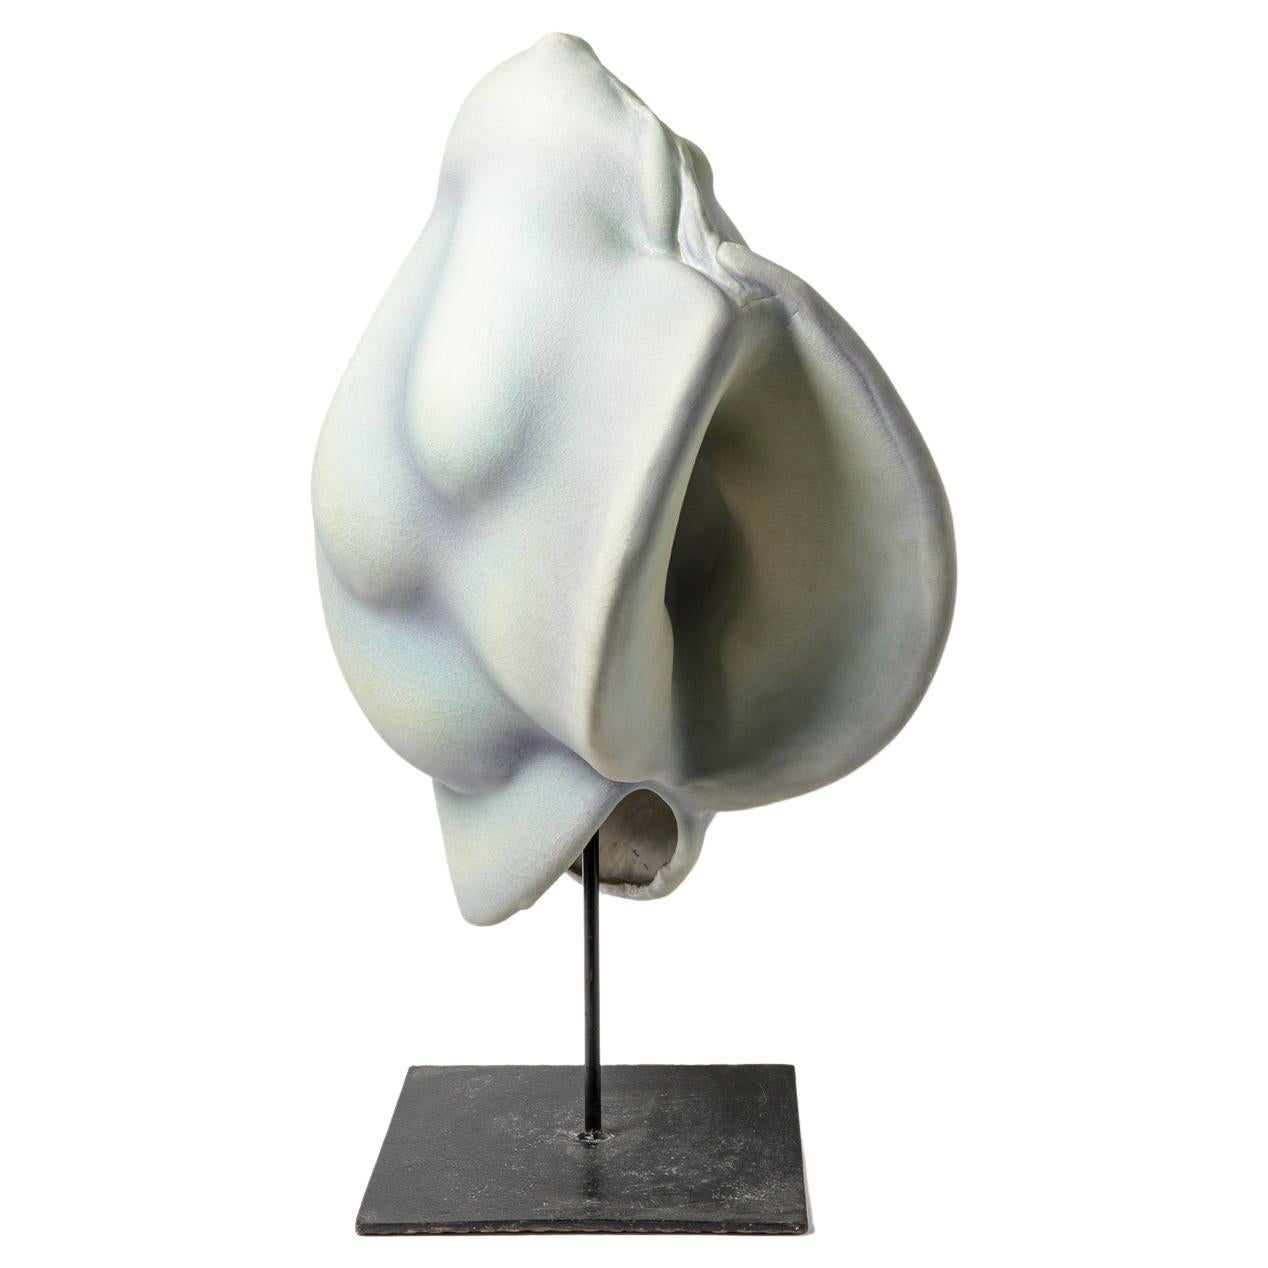 A porcelain sculpture by Wayne Fischer, 1997